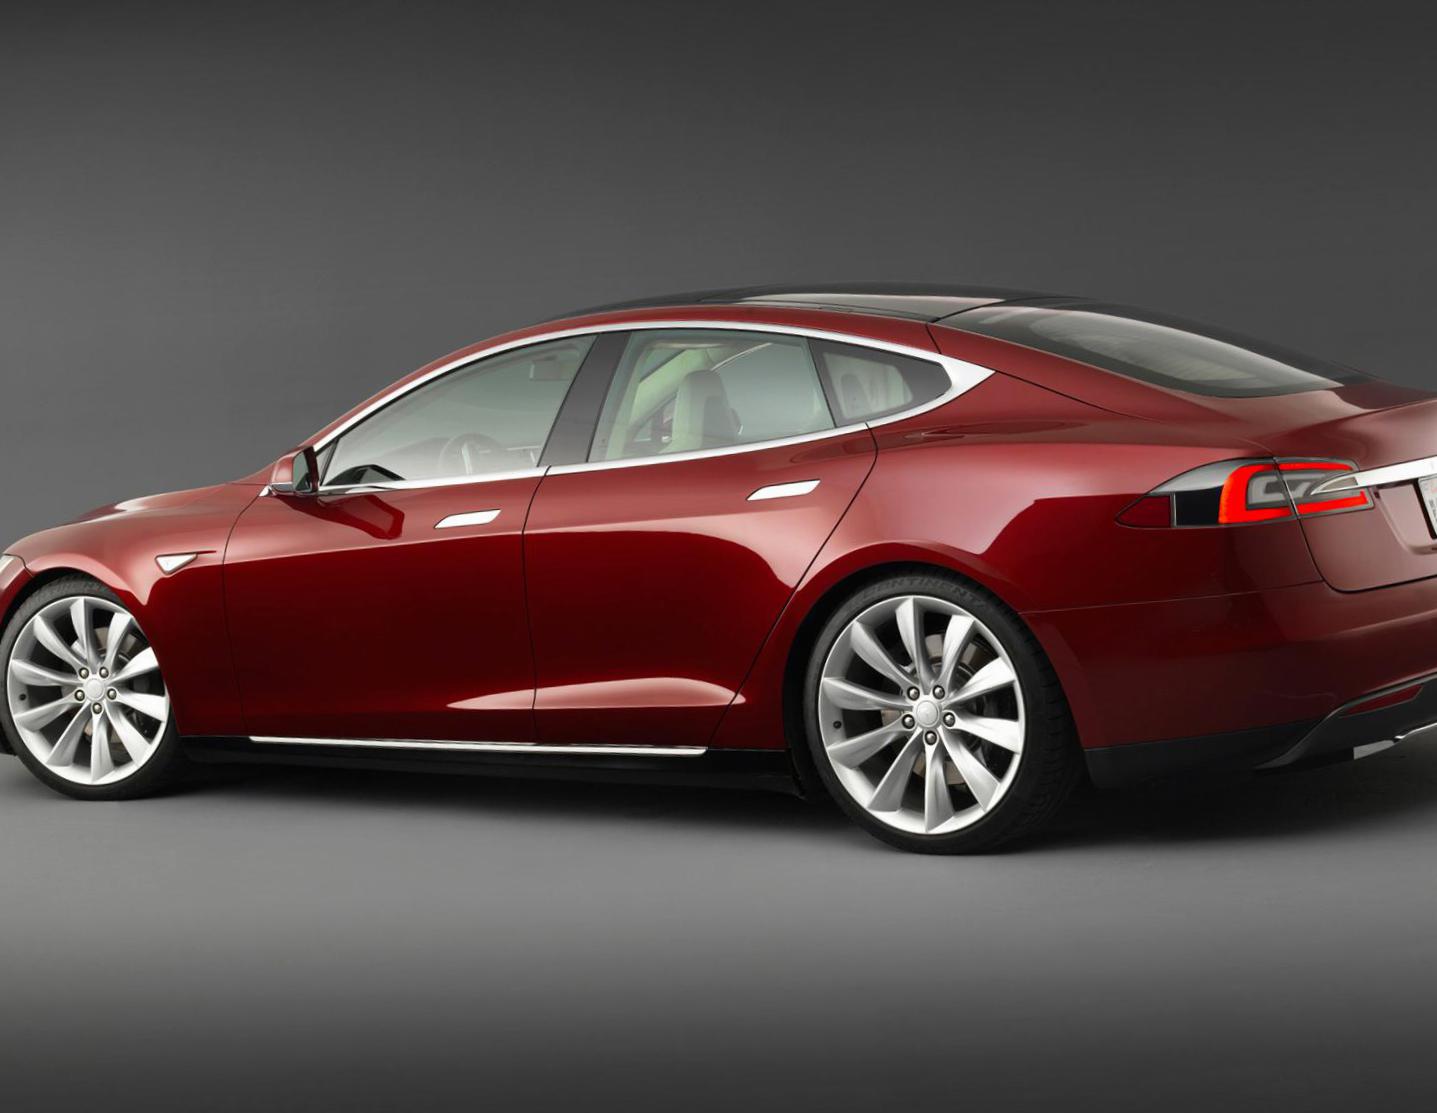 Model S Tesla models 2010